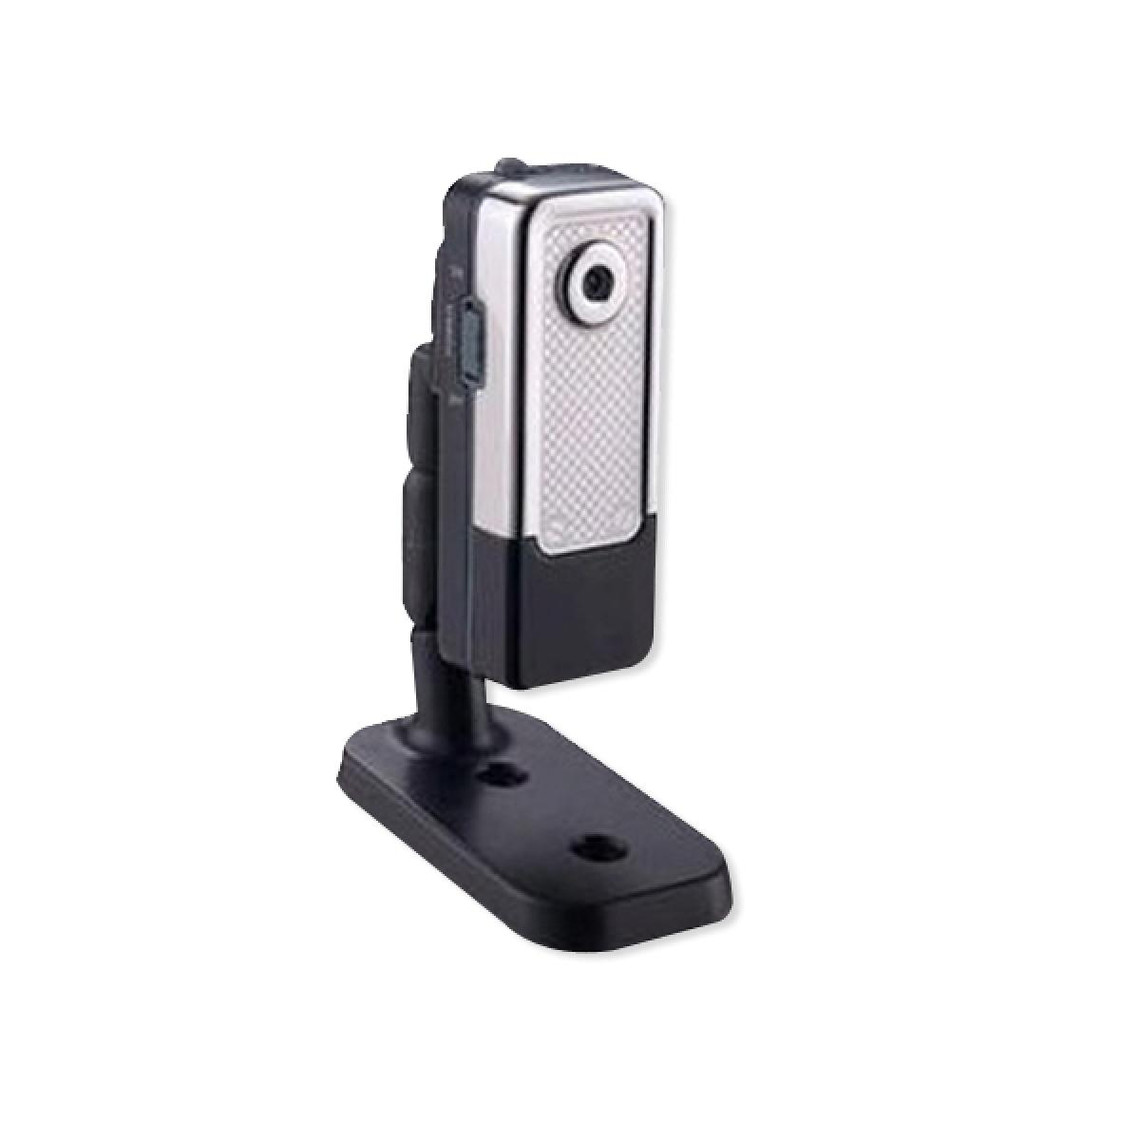 Totalcadeau Mini camera caméscope espion argent